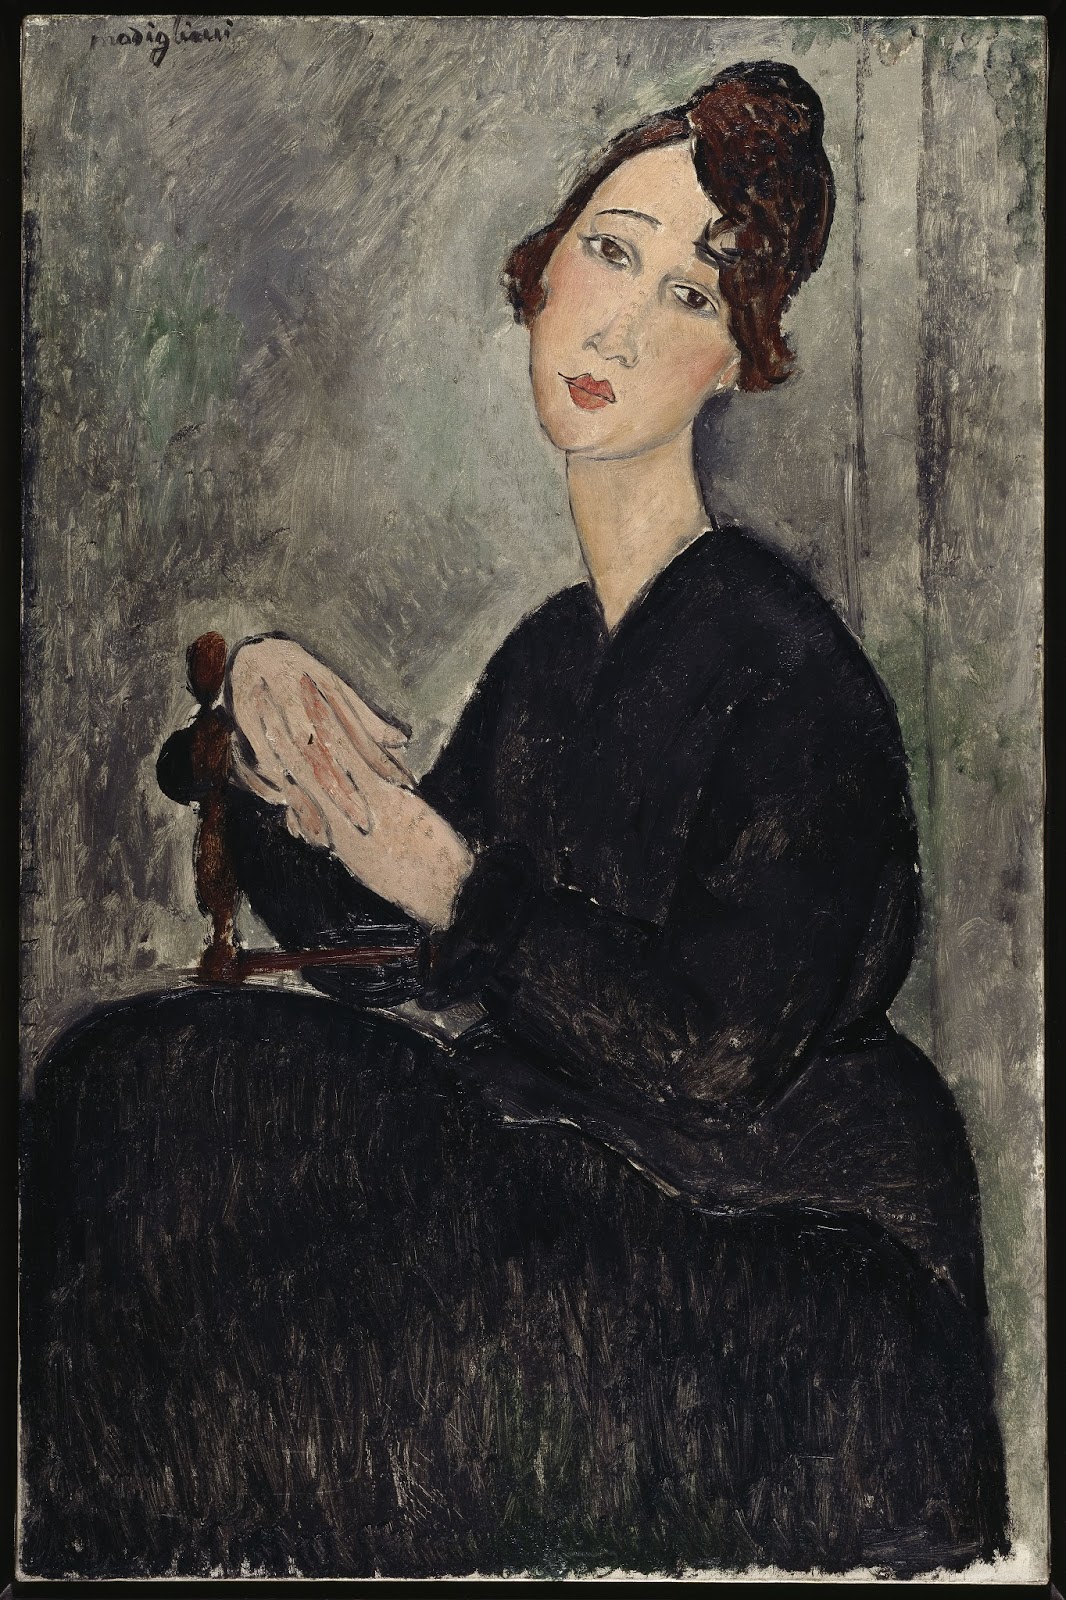 Amedeo+Modigliani-1884-1920 (59).jpg